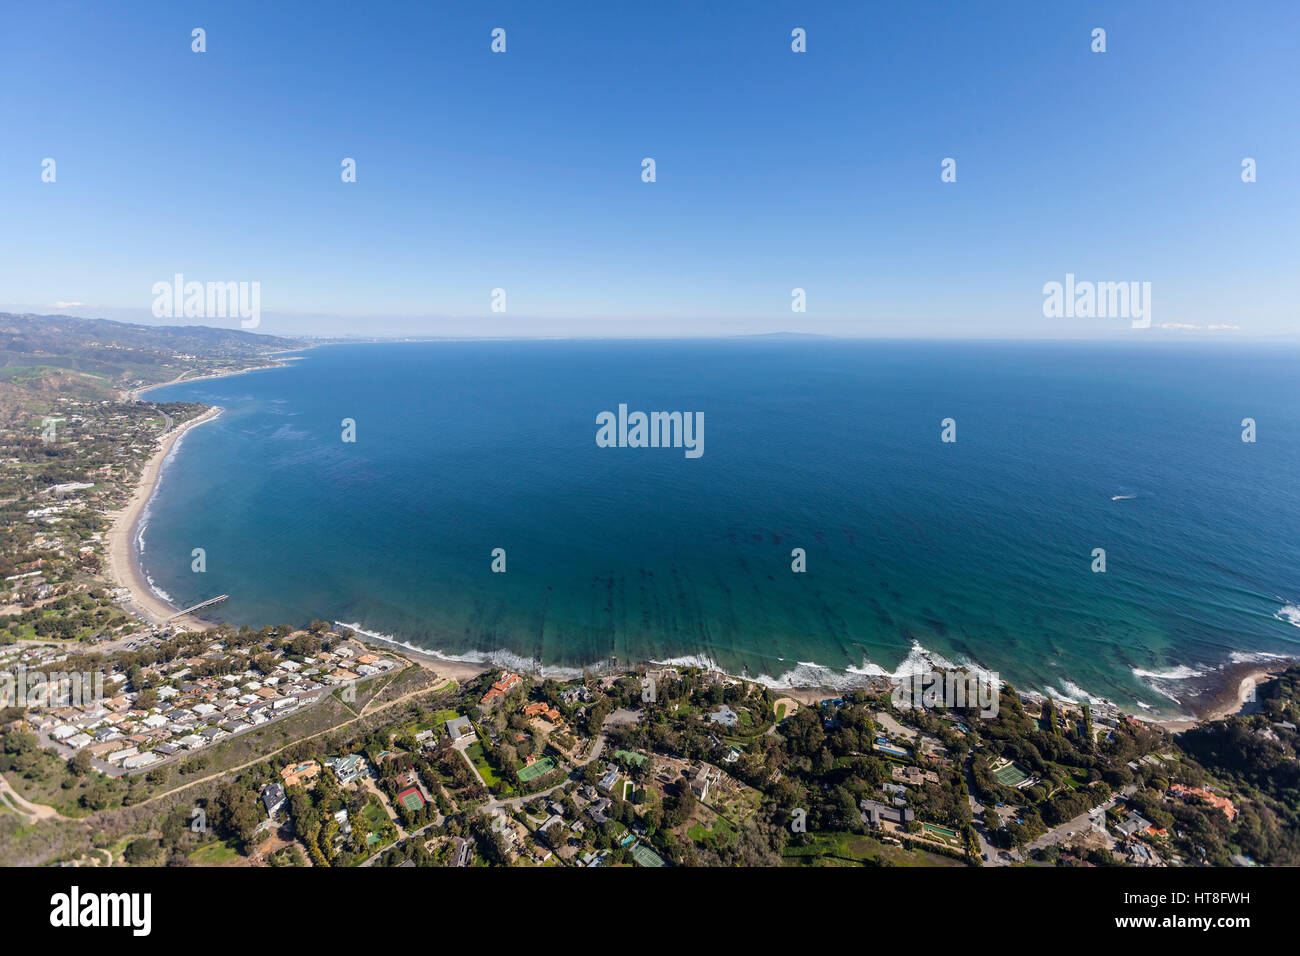 Vue aérienne de la baie de Santa Monica à partir de la région de Paradise Cove Malibu, Californie. Banque D'Images